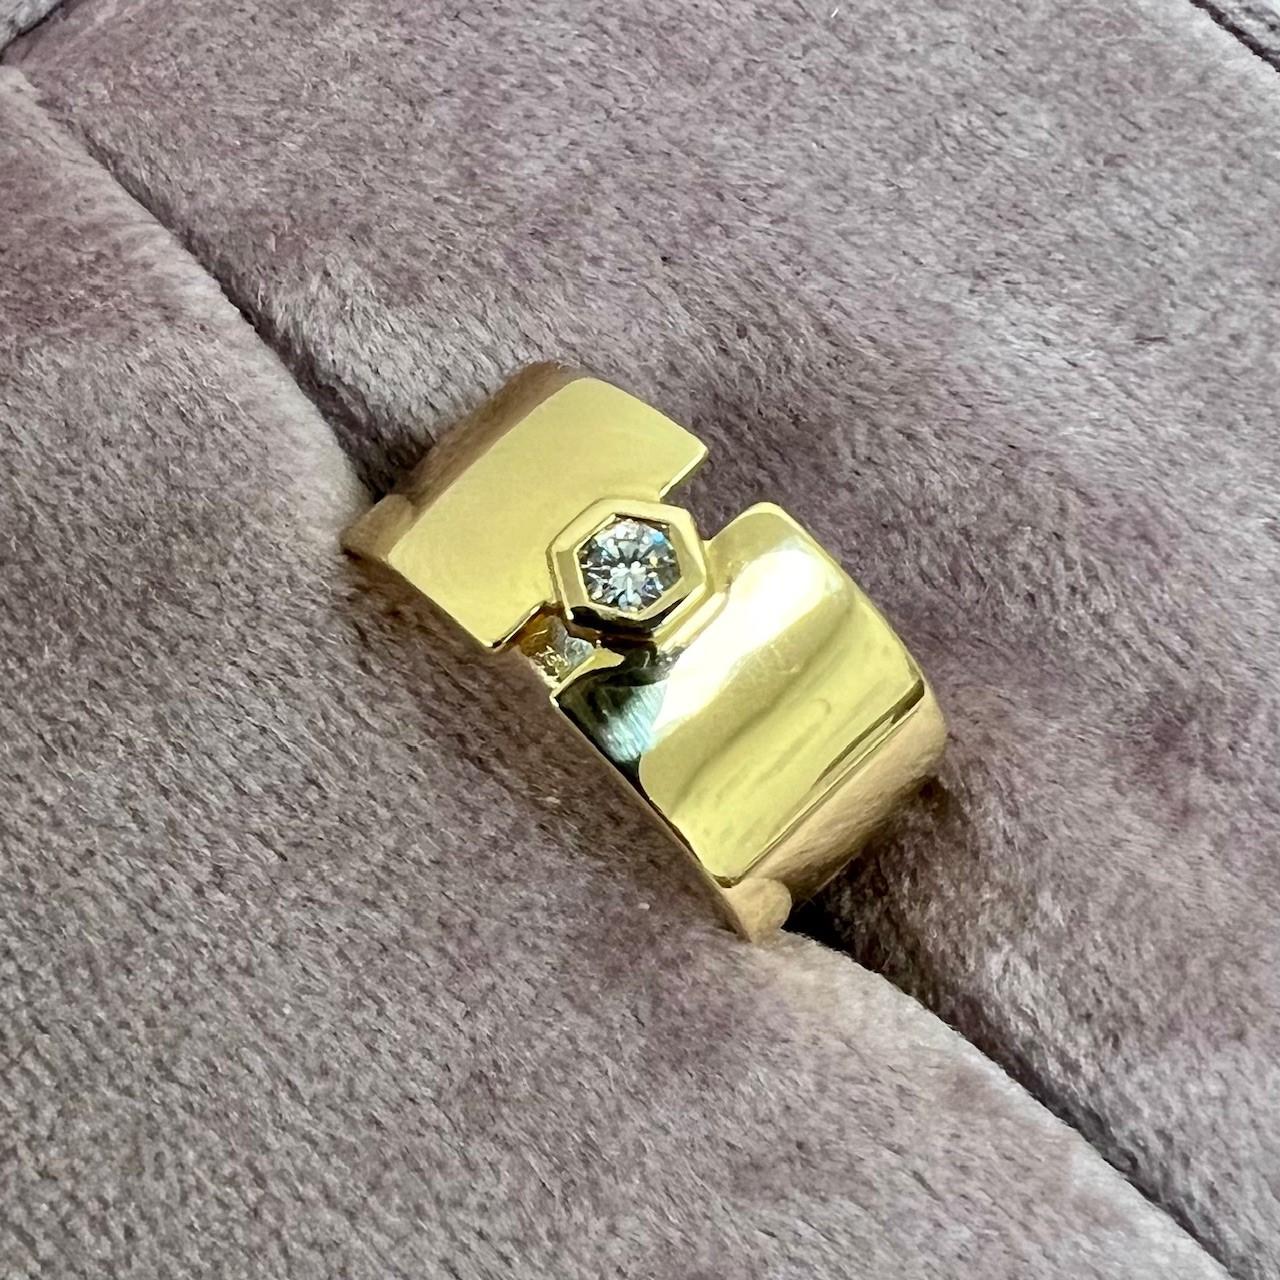 Hergestellt aus 18 Karat Gelbgold
Diamant ca. 0,30 Karat.
Ringgröße US 7, kann nach Wunsch angepasst werden
Limitierte Auflage

Dieser Ring aus 18-karätigem Gelbgold ist in limitierter Auflage hergestellt und präsentiert sich mit  Diamanten von etwa